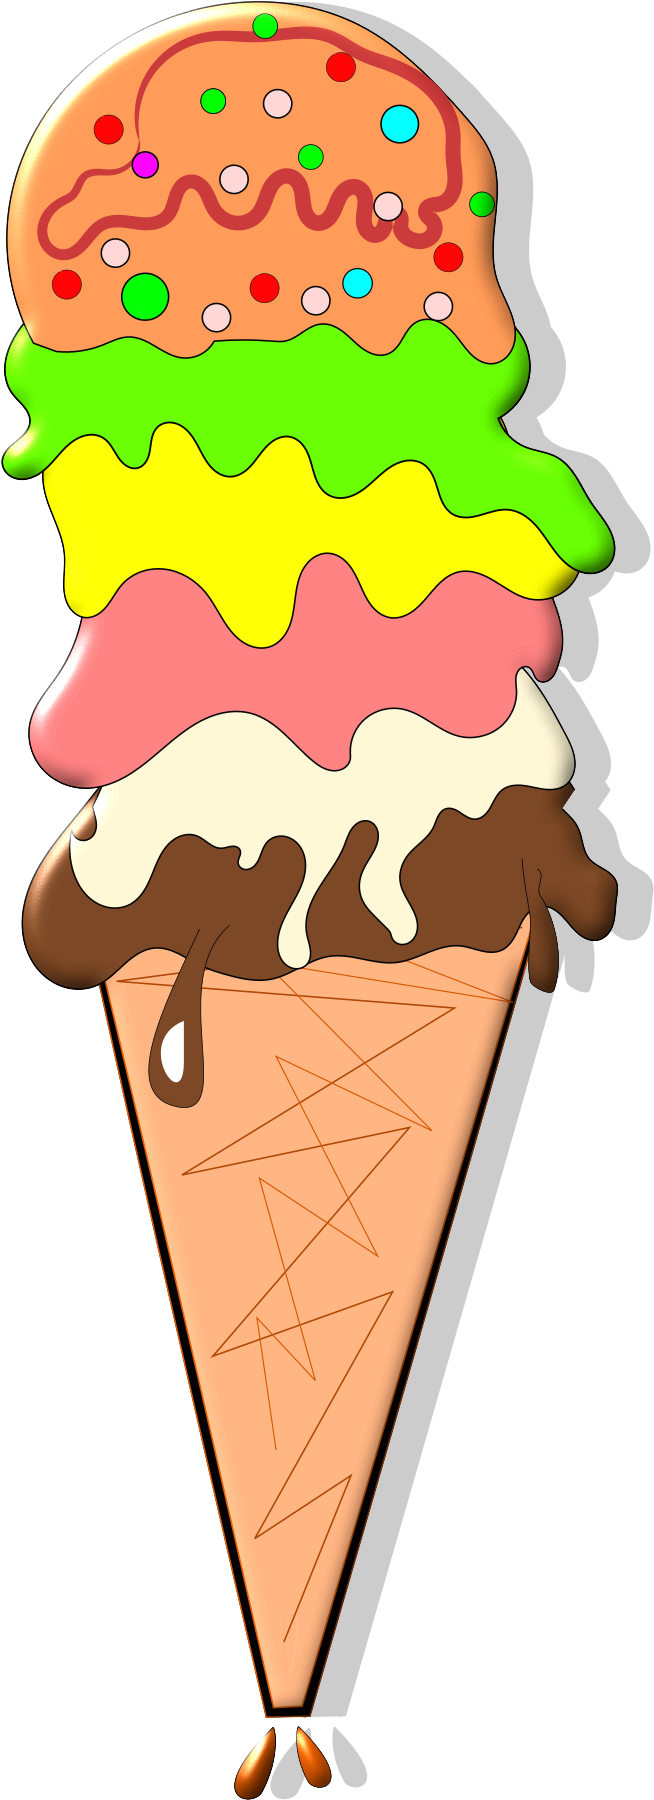 Ice Cream Cones Chocolate Ice Cream Strawberry Ice - Ice Cream Cones Chocolate Ice Cream Strawberry Ice (960x2400)